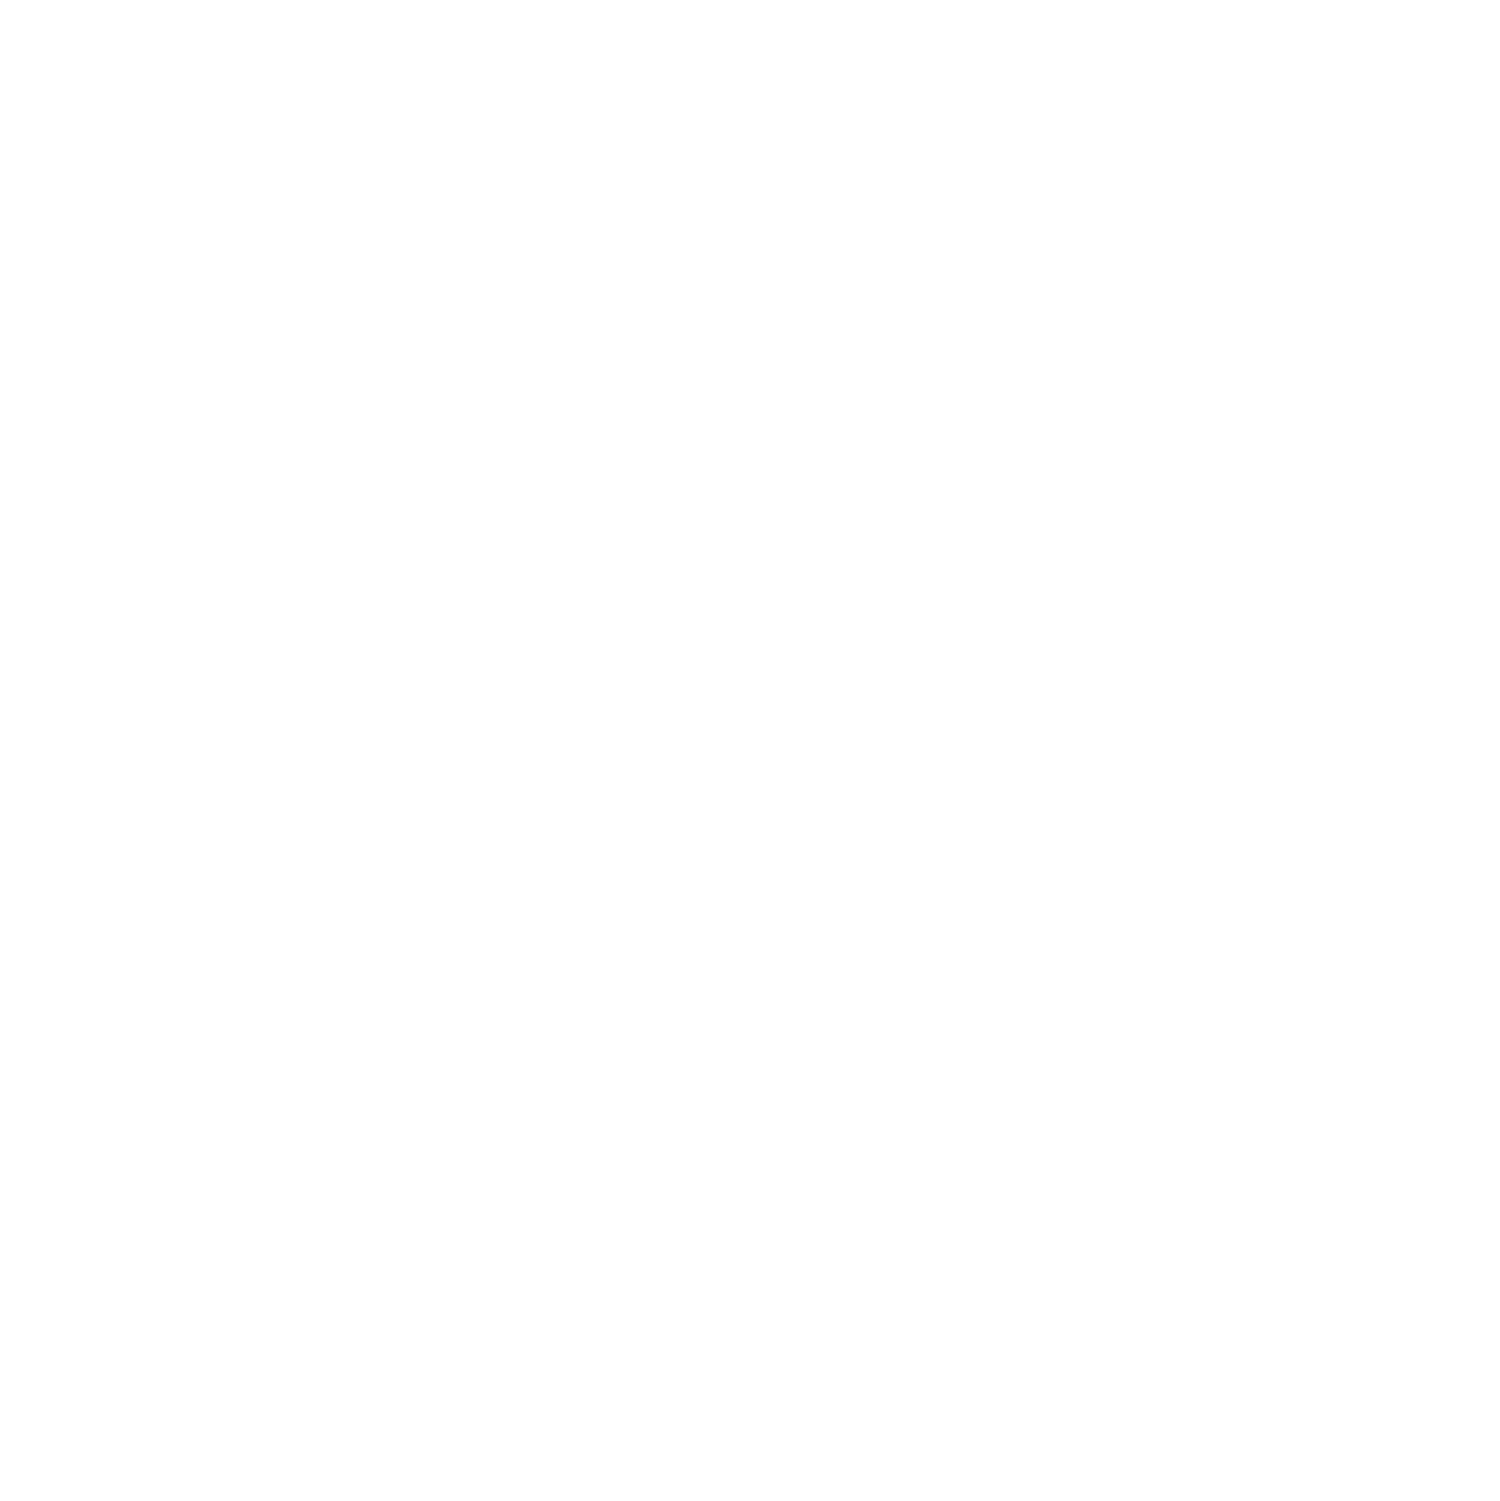 MORALA CONSTRUCTIONS